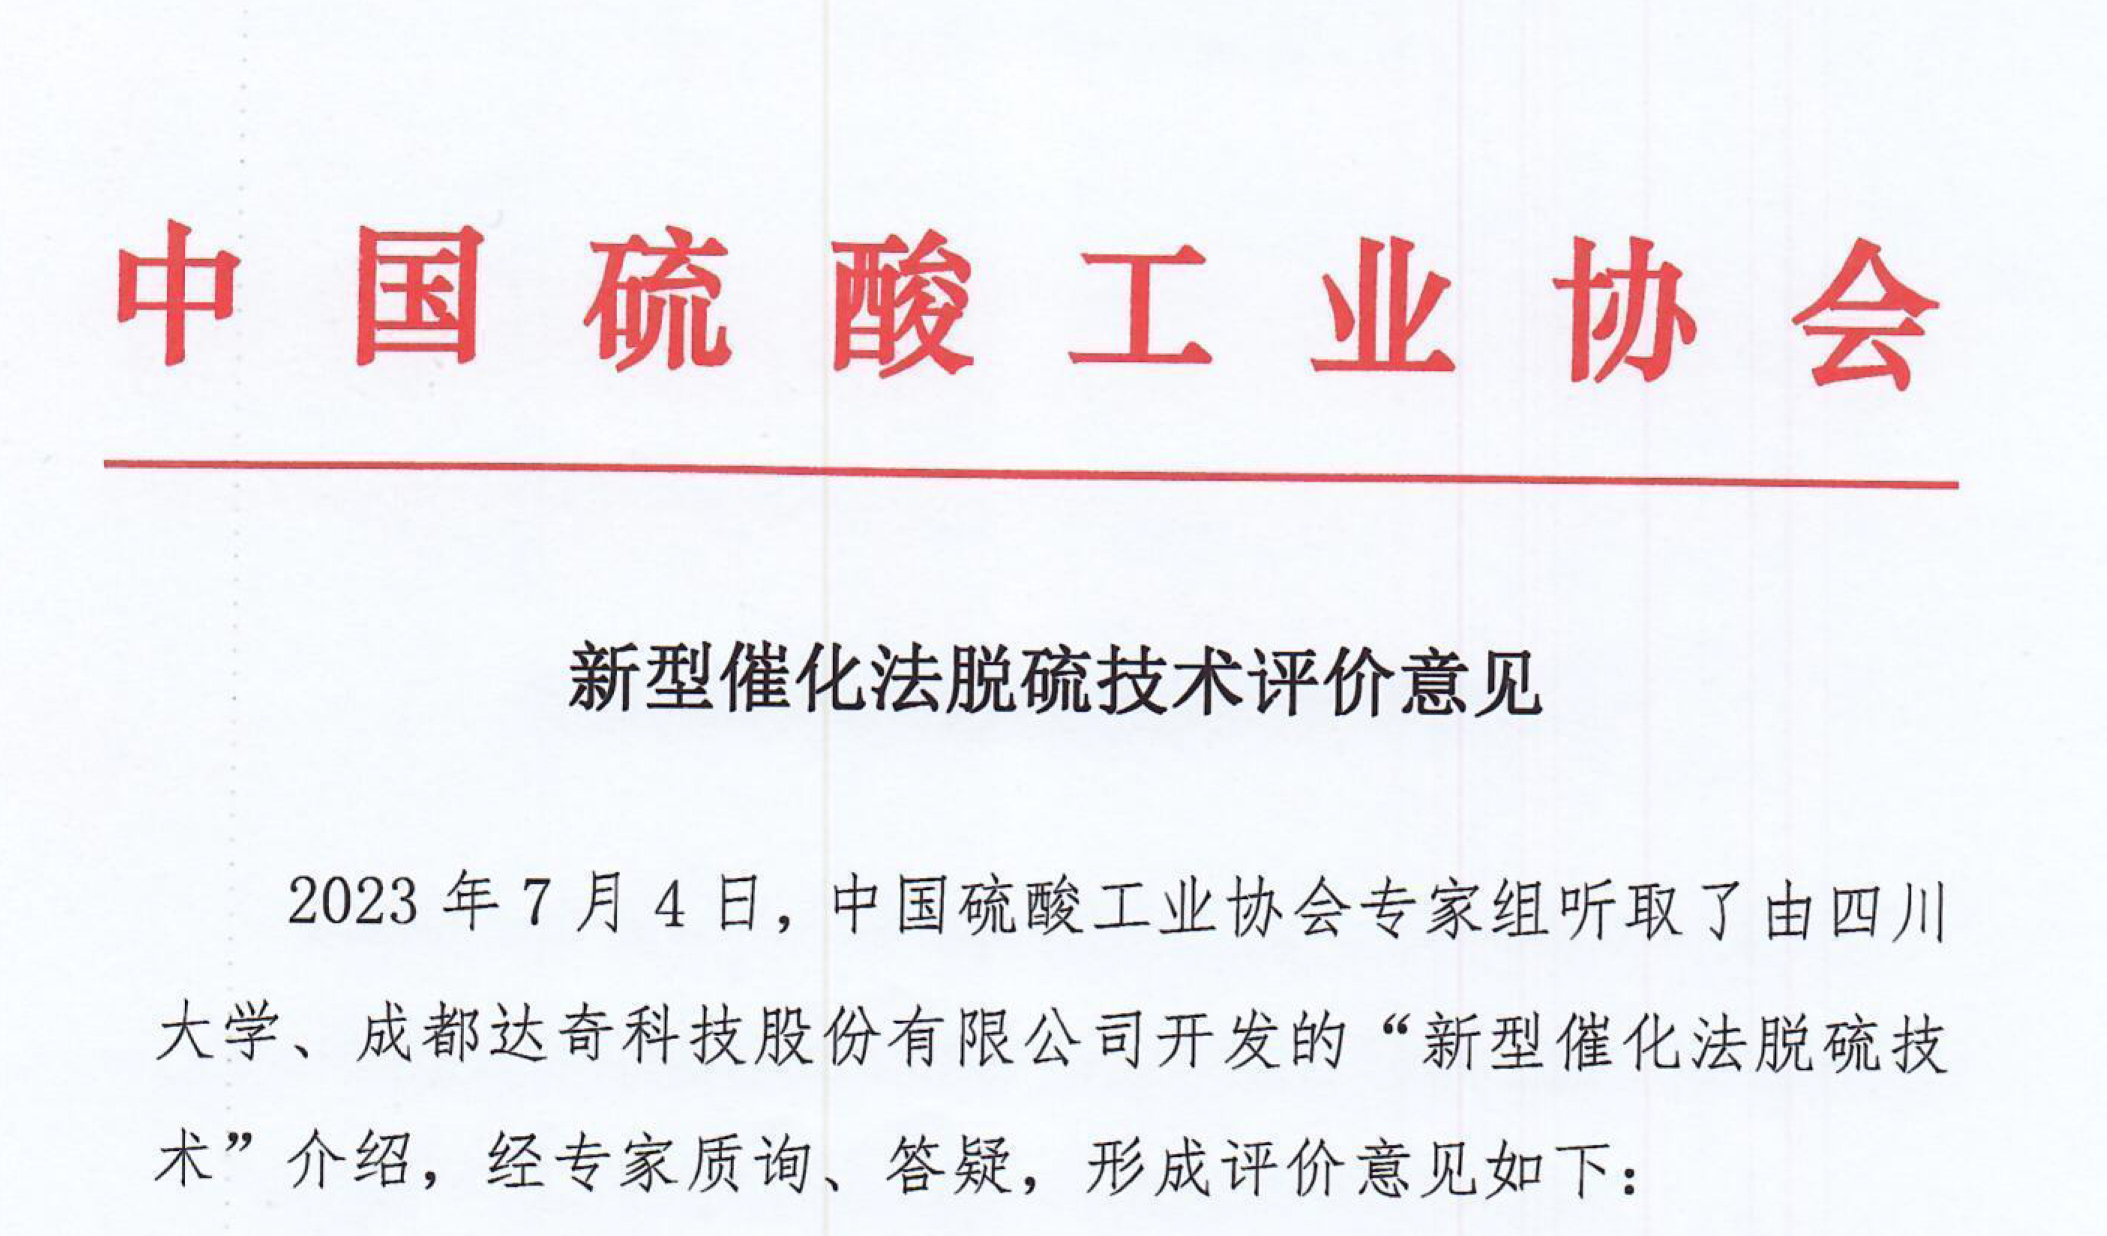 中国硫酸工业协会发布《新型催化法脱硫技术评价意见》